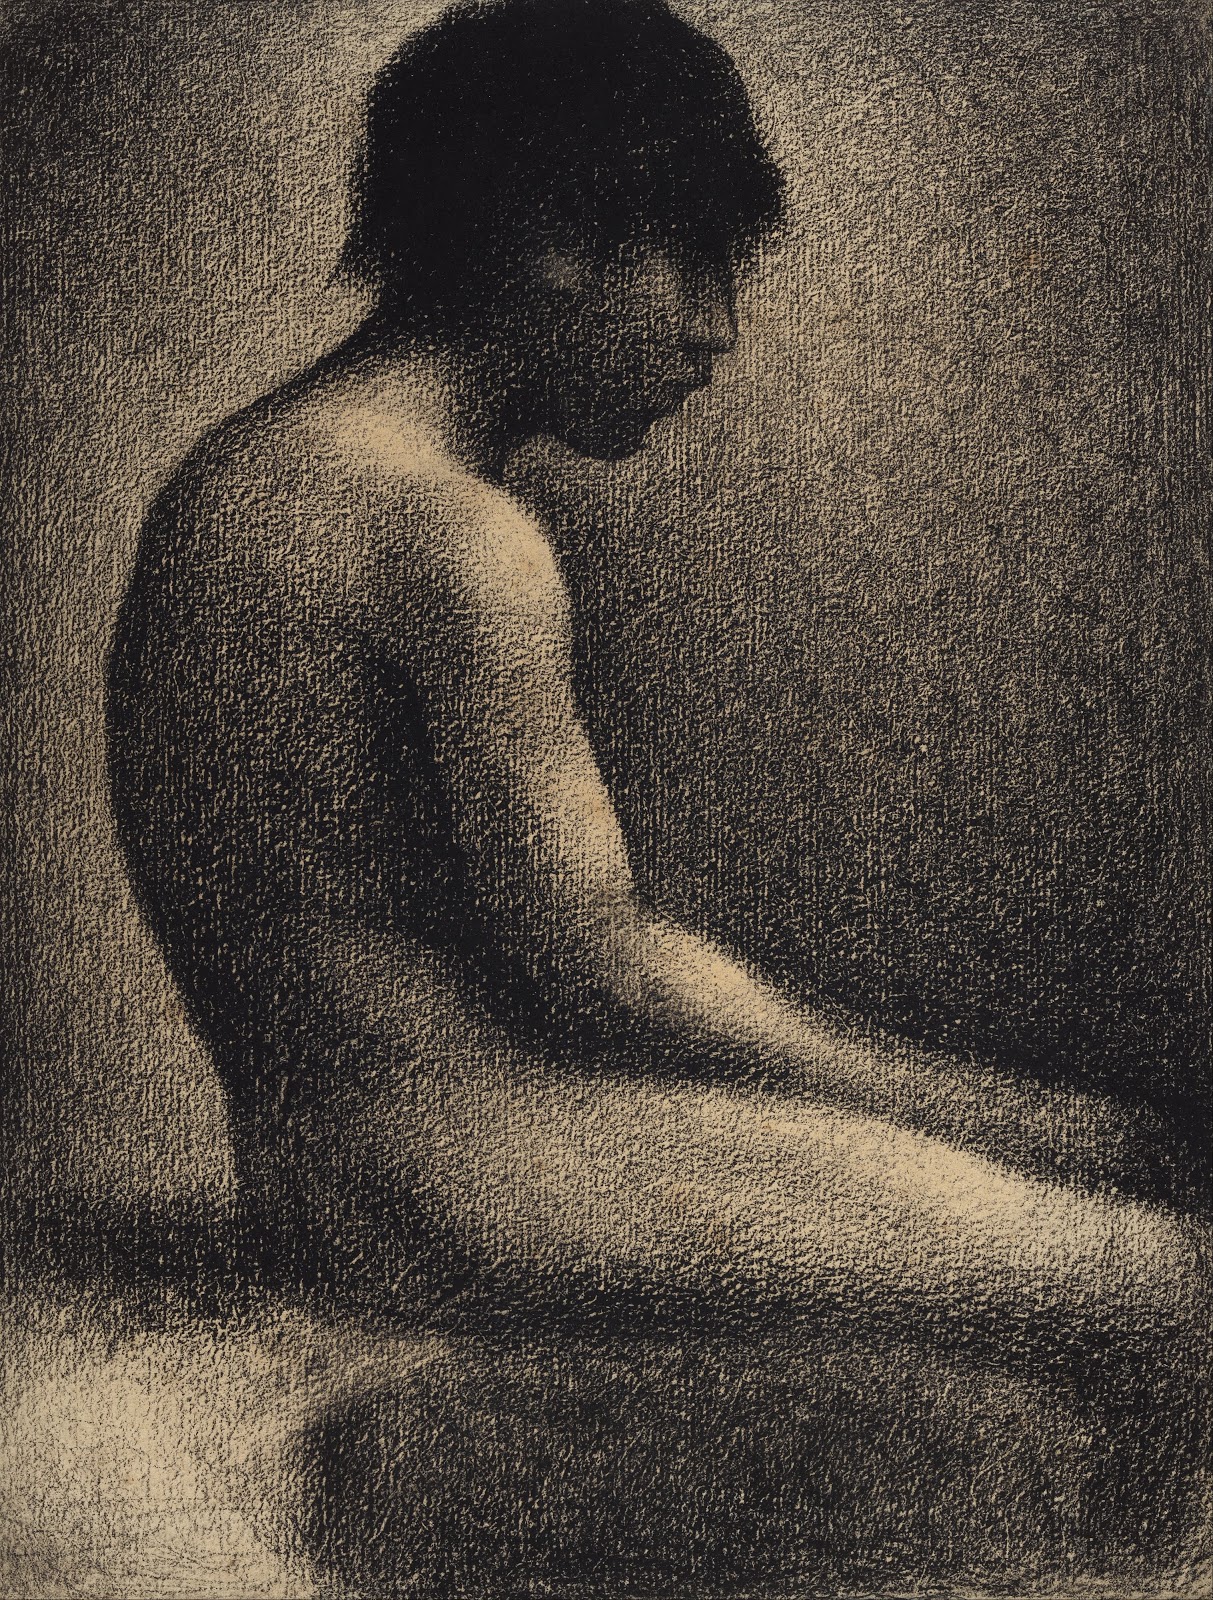 Georges+Seurat-1859-1891 (59).jpg